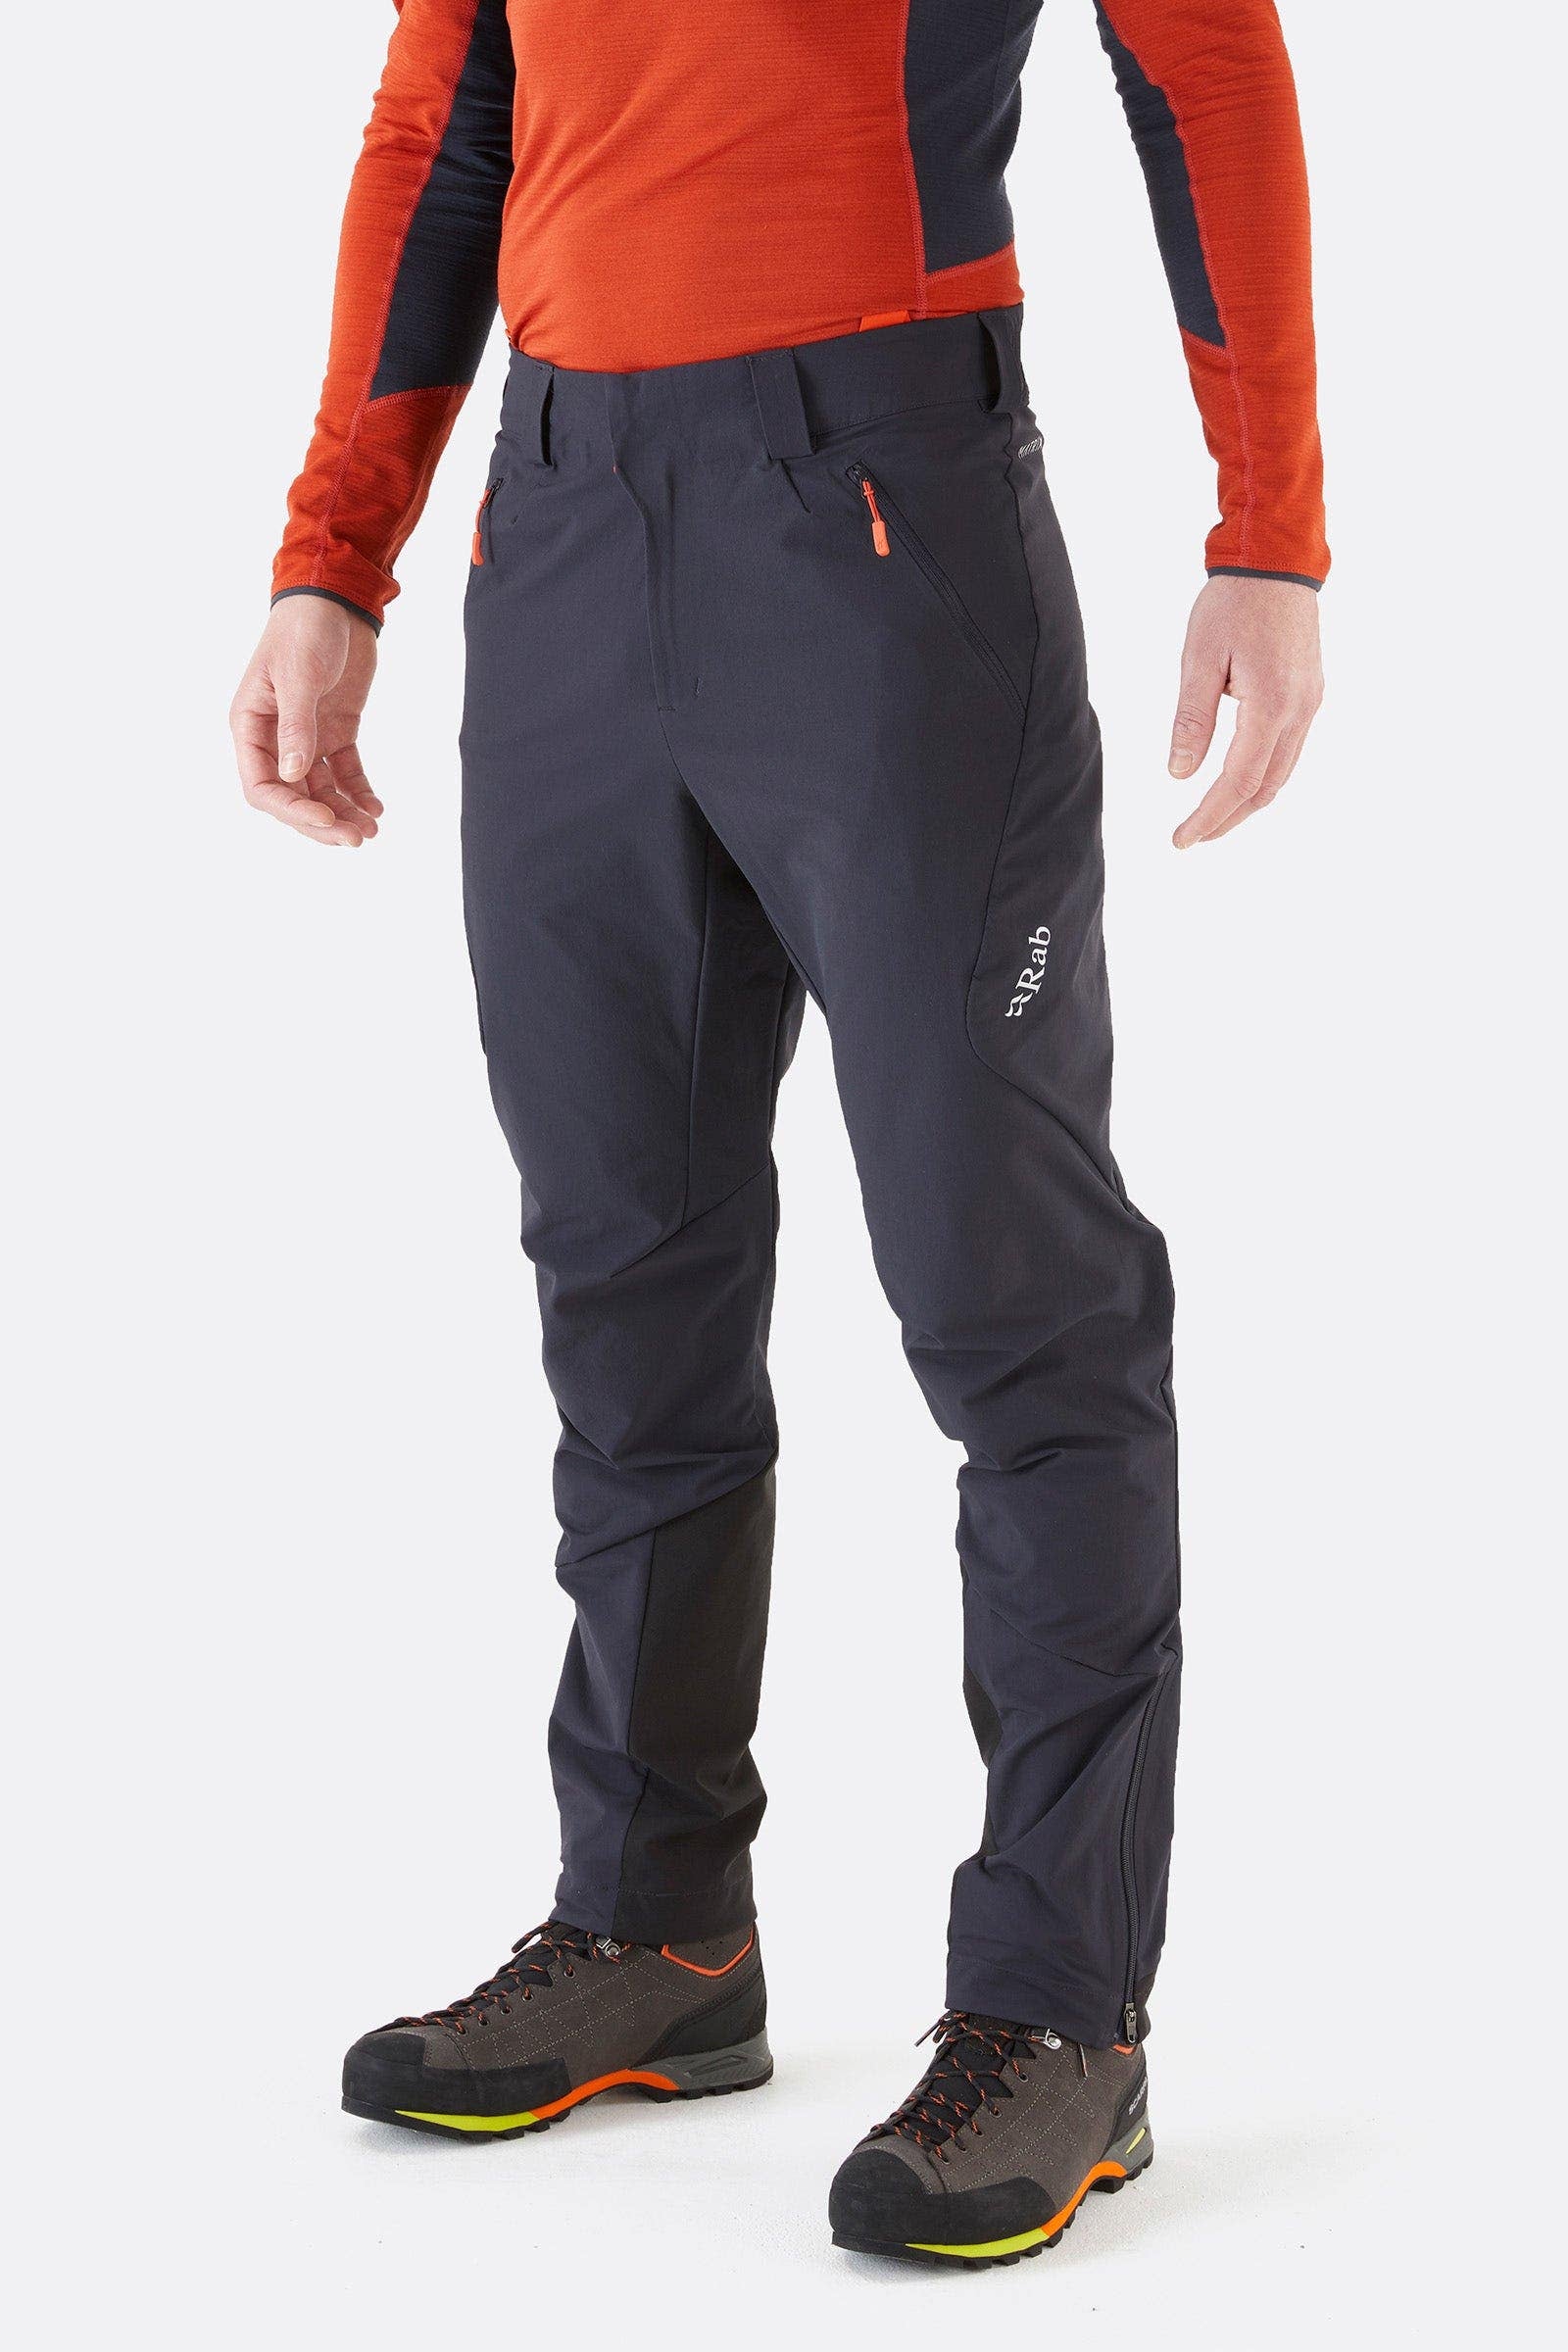 Men's Winter Alpine Pants